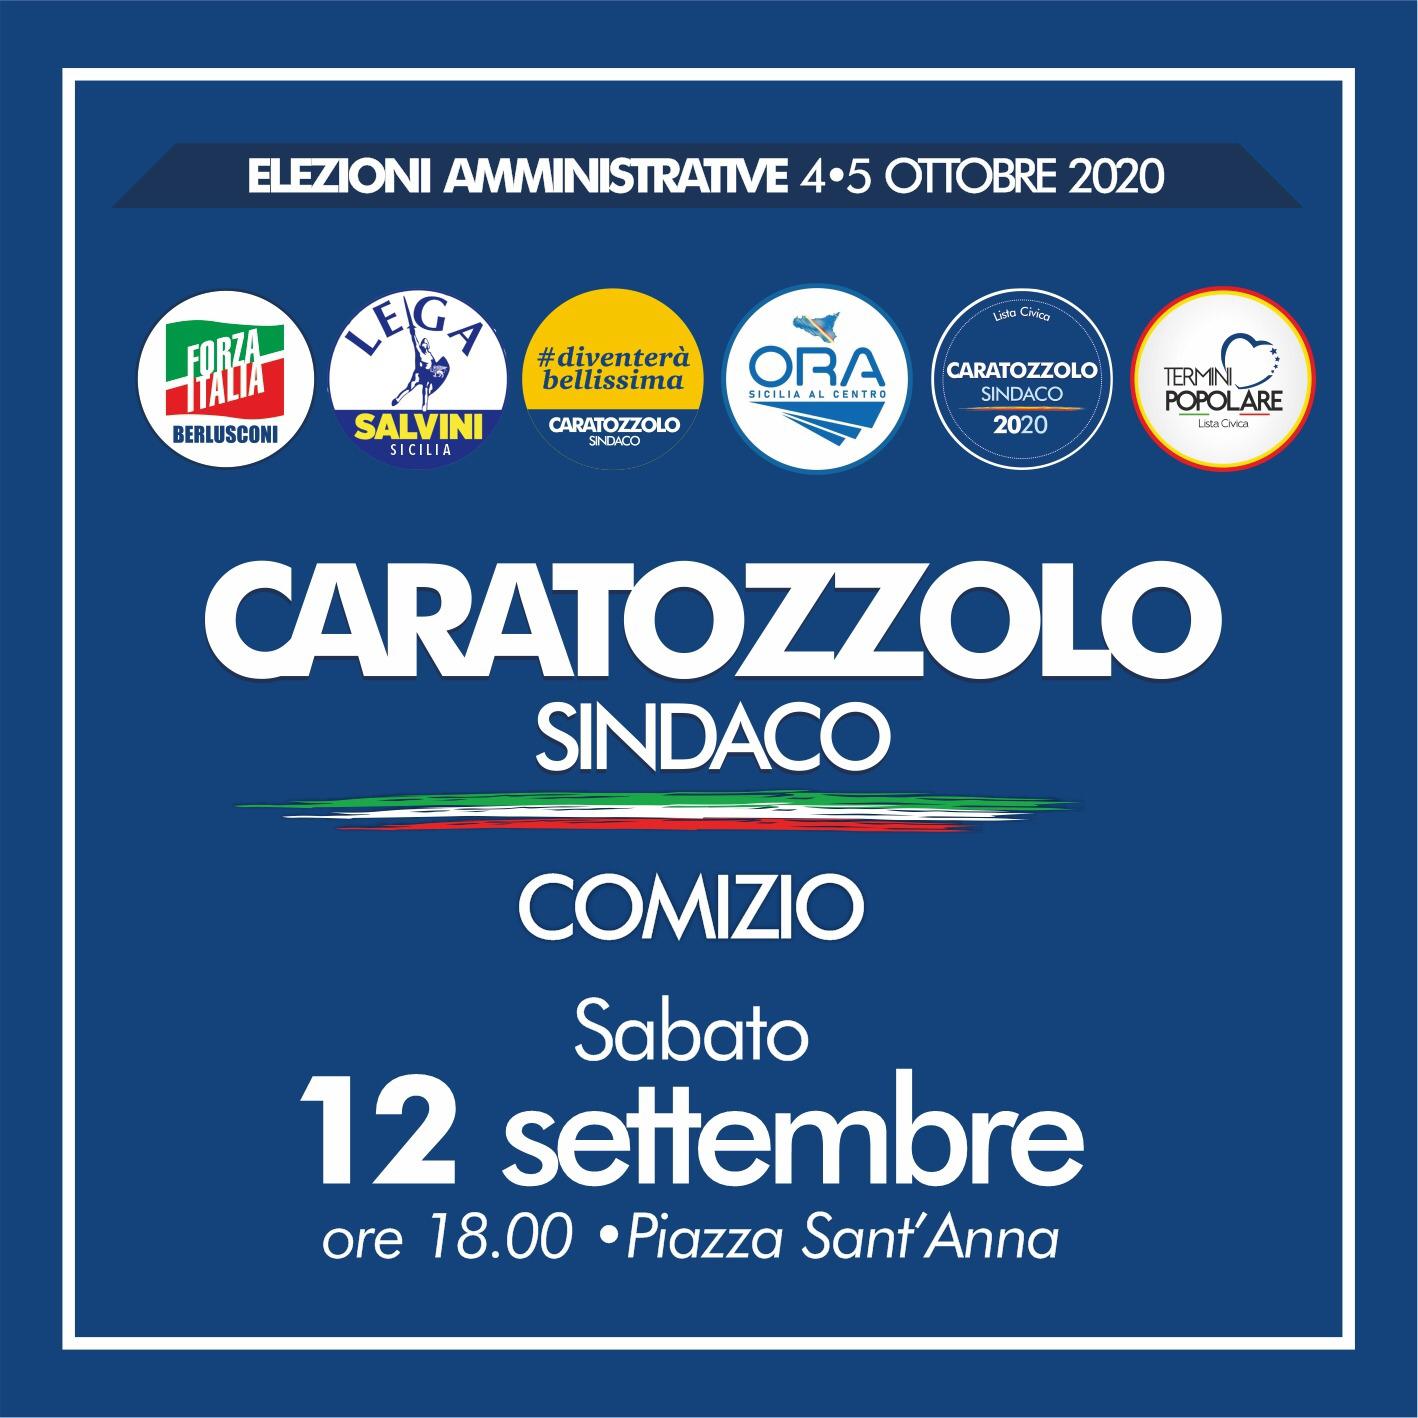 Elezioni: oggi comizio candidato sindaco Francesco Caratozzolo